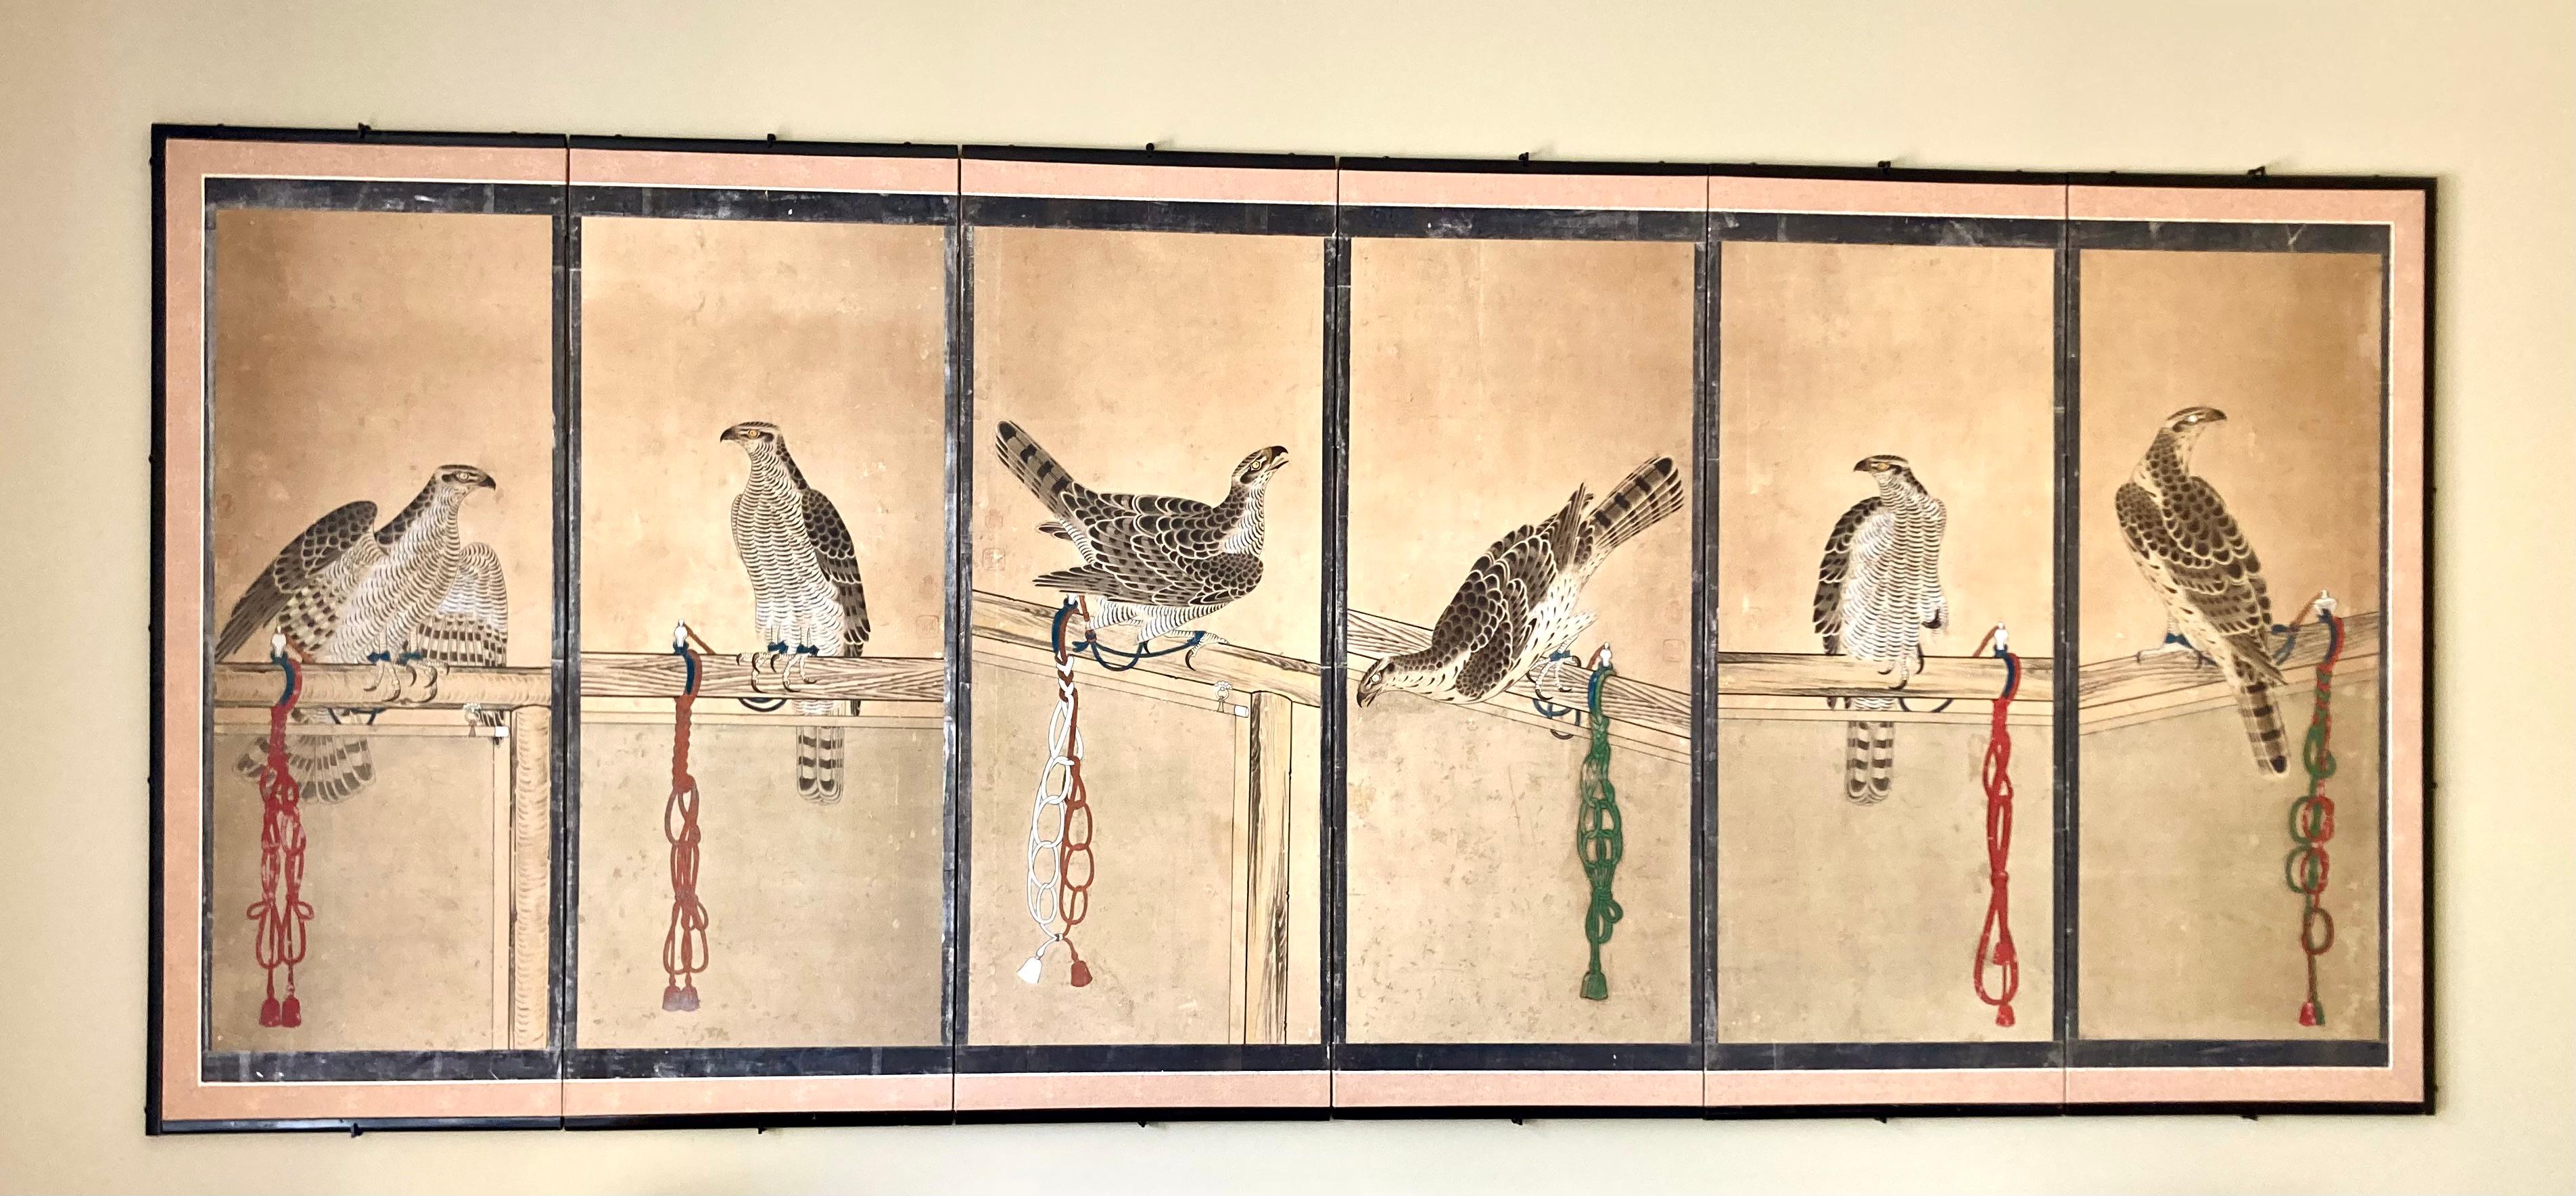 Remarquable sérigraphie japonaise ancienne de la période Edo à l'encre et aux couleurs sur papier, chacun des 6 panneaux encadrés représentant un autour des palombes (faucon) attaché à un perchoir par une Corde de soie avec les nœuds distinctifs de